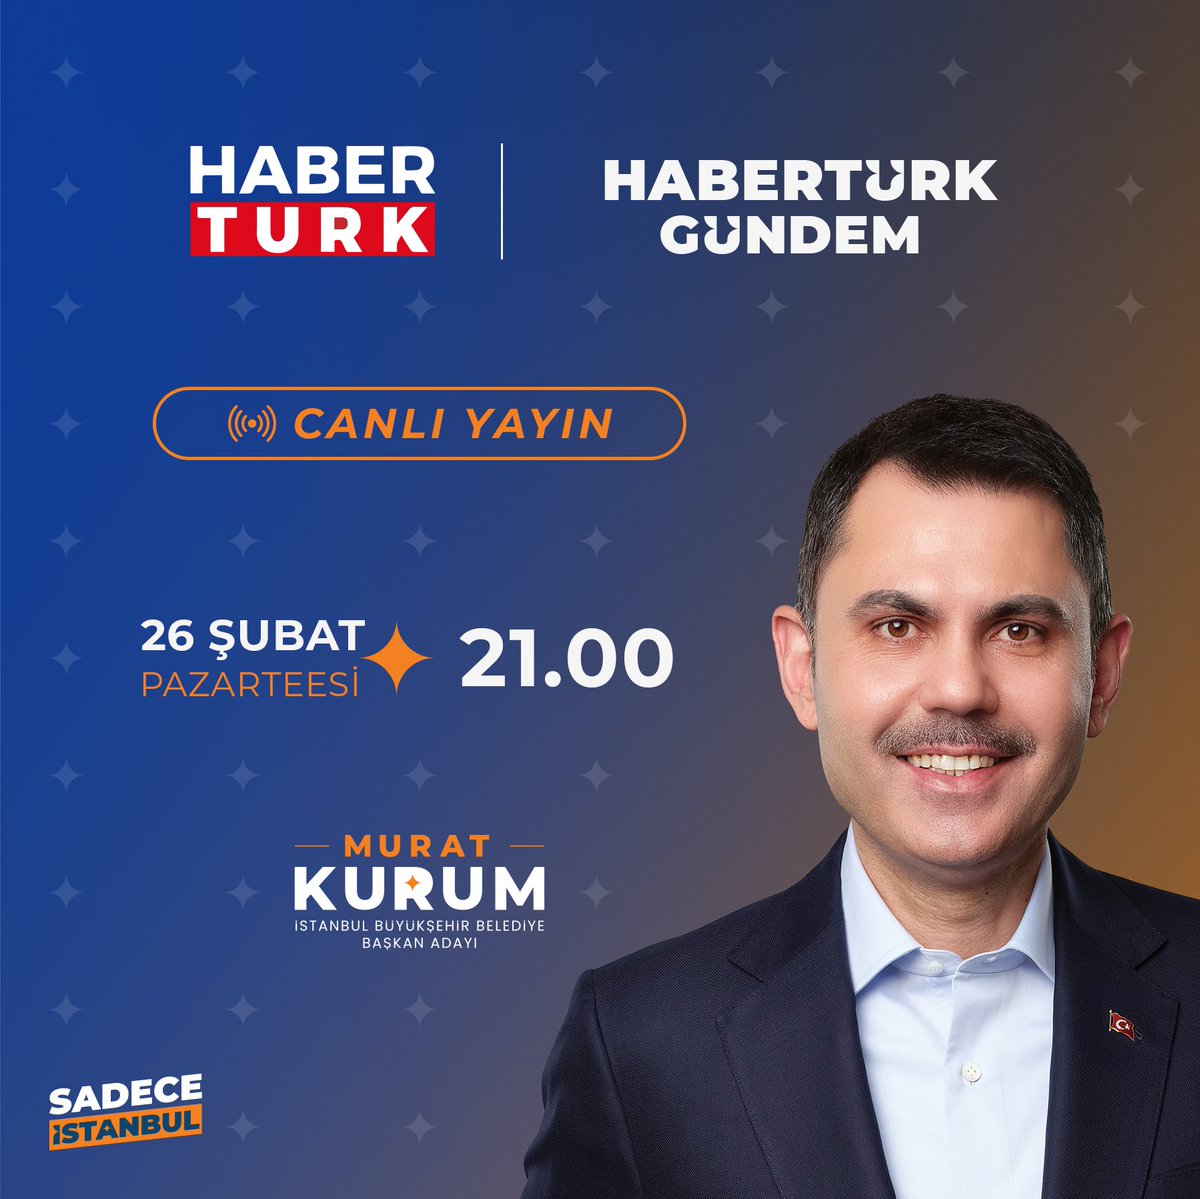 21:00’da Habertürk ekranlarında İstanbul’umuzu konuşacağız. Ekran başında buluşalım.